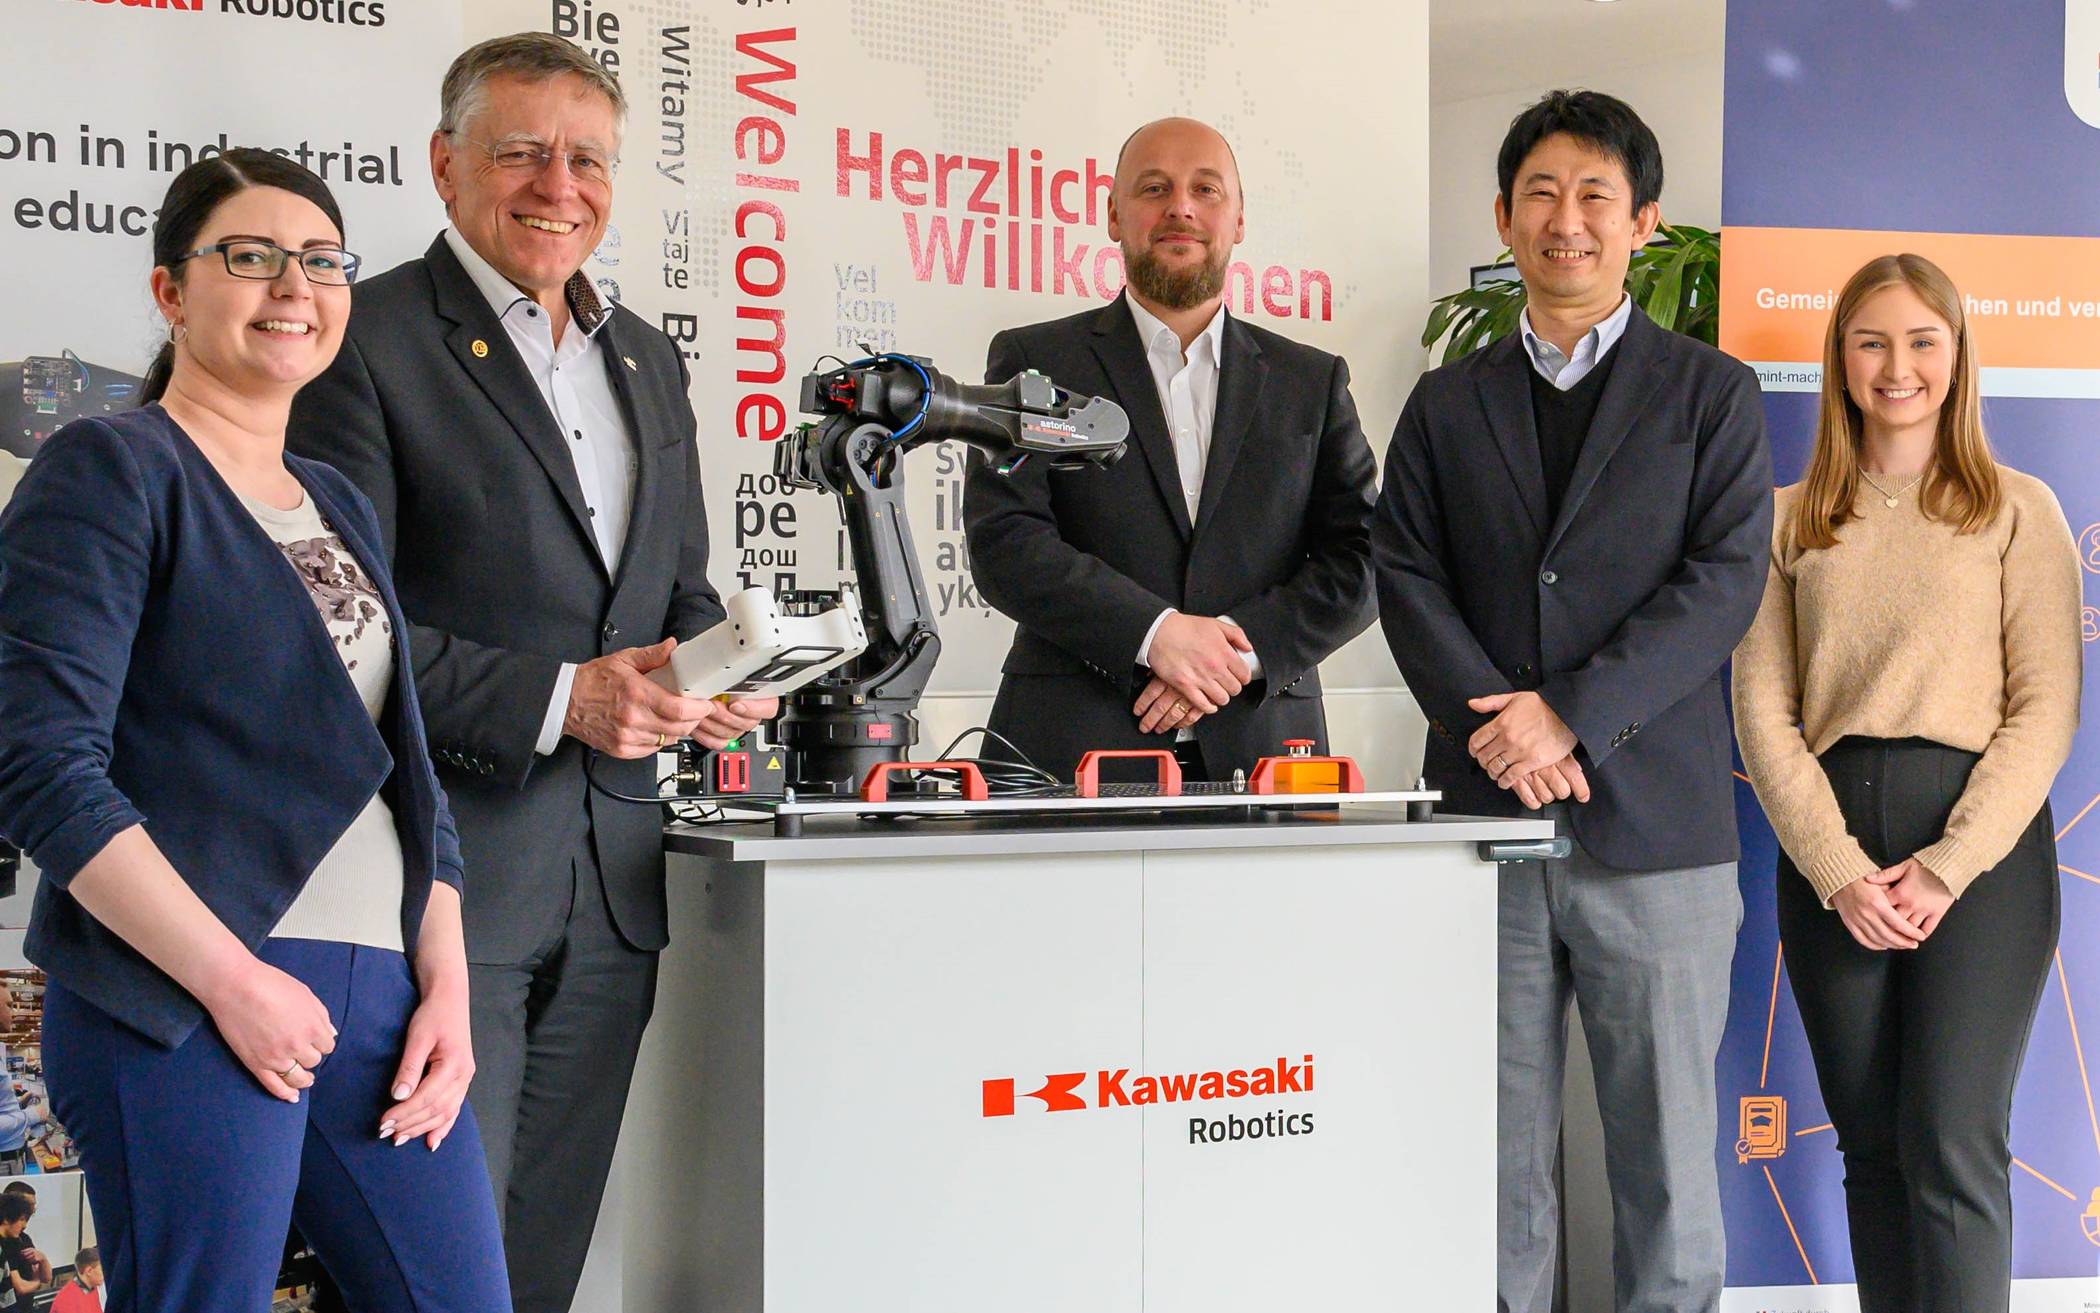  Fiona Richter, Landrat Hans-Jürgen Petrauschke, Philip Werner, Shuhei Kuraoka (Geschäftsführer von "Kawasaki Robotics EMEA") und zdi-Koordinatorin Jessica Schillings stellten das Spielfeld des diesjährigen Roboterwettbewerbs vor. 